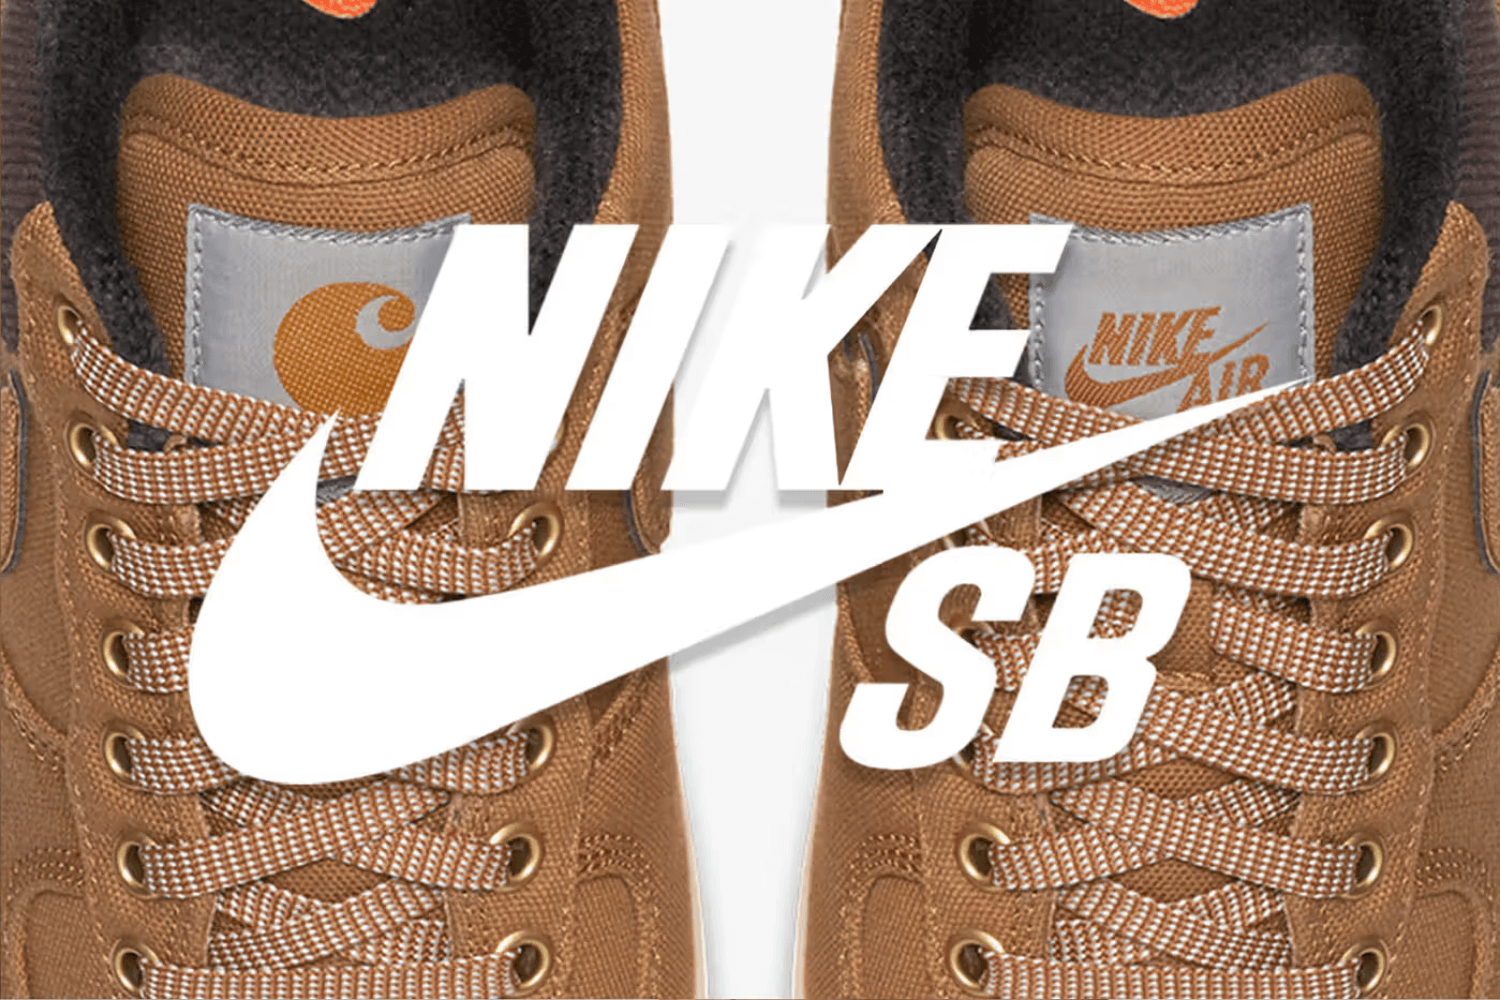 Het gerucht gaat rond dat wij een nieuwe Nike SB x Carhartt samenwerking kunnen verwachten